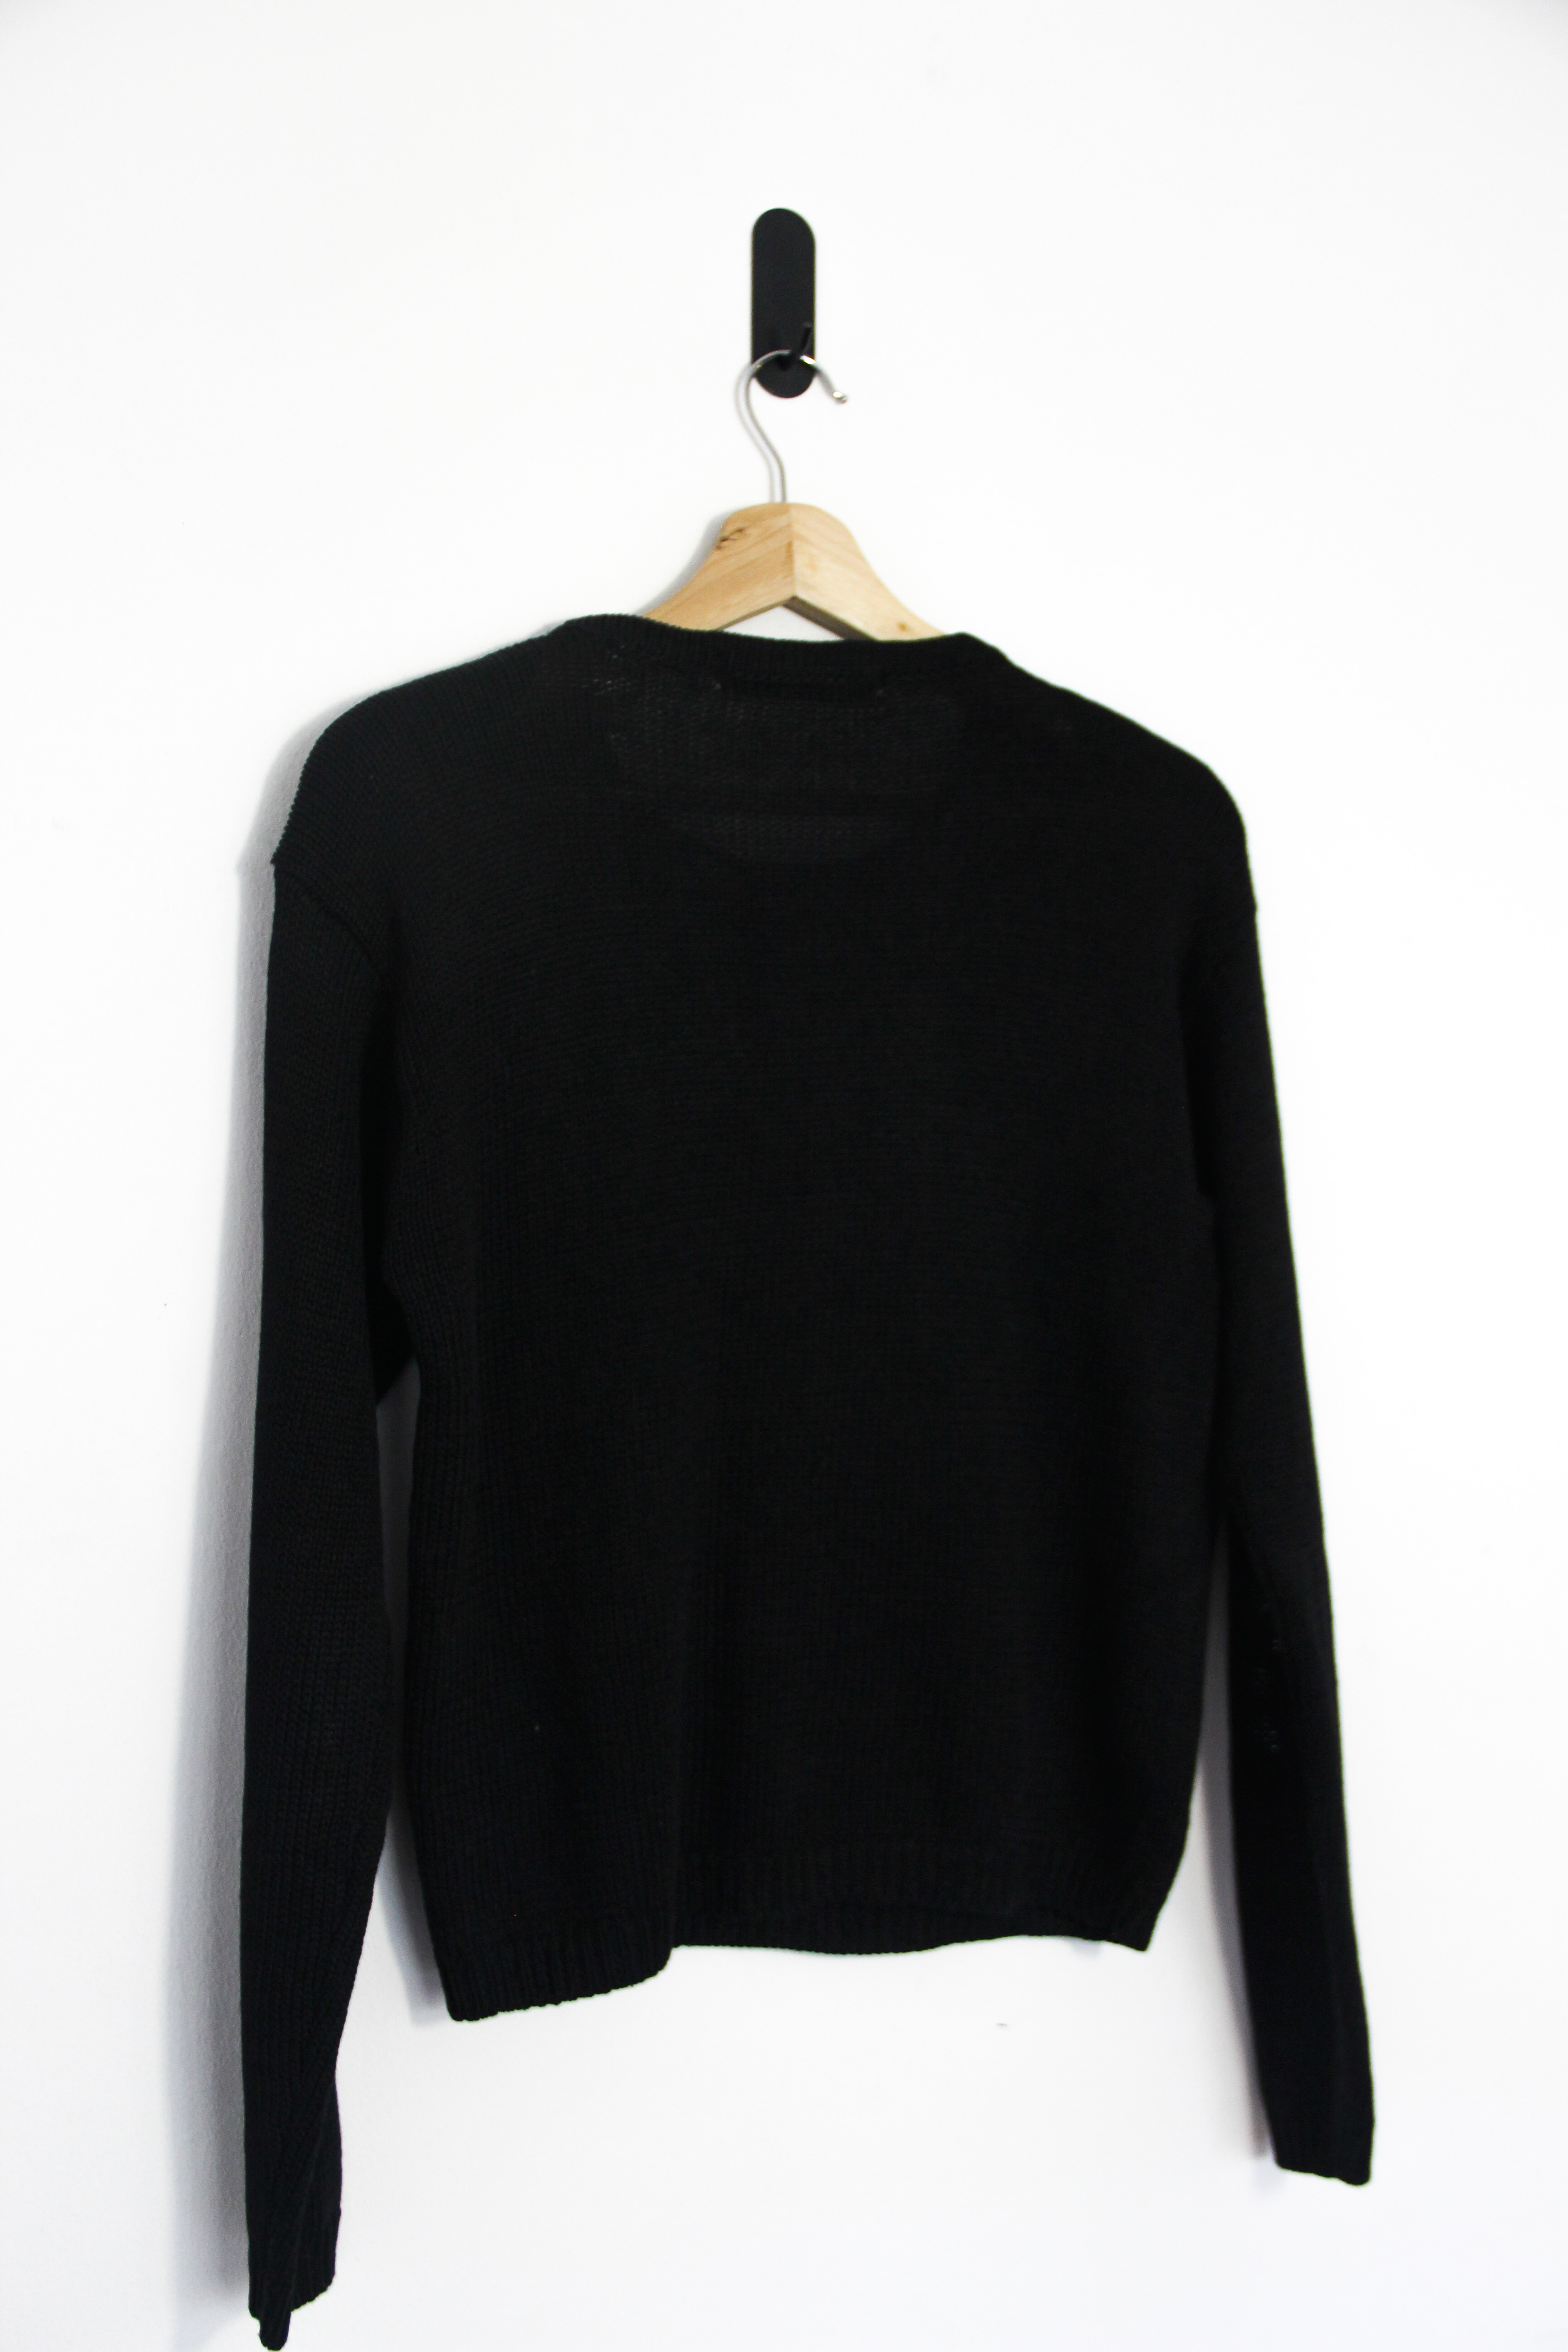 Sweater negro bordado shiny